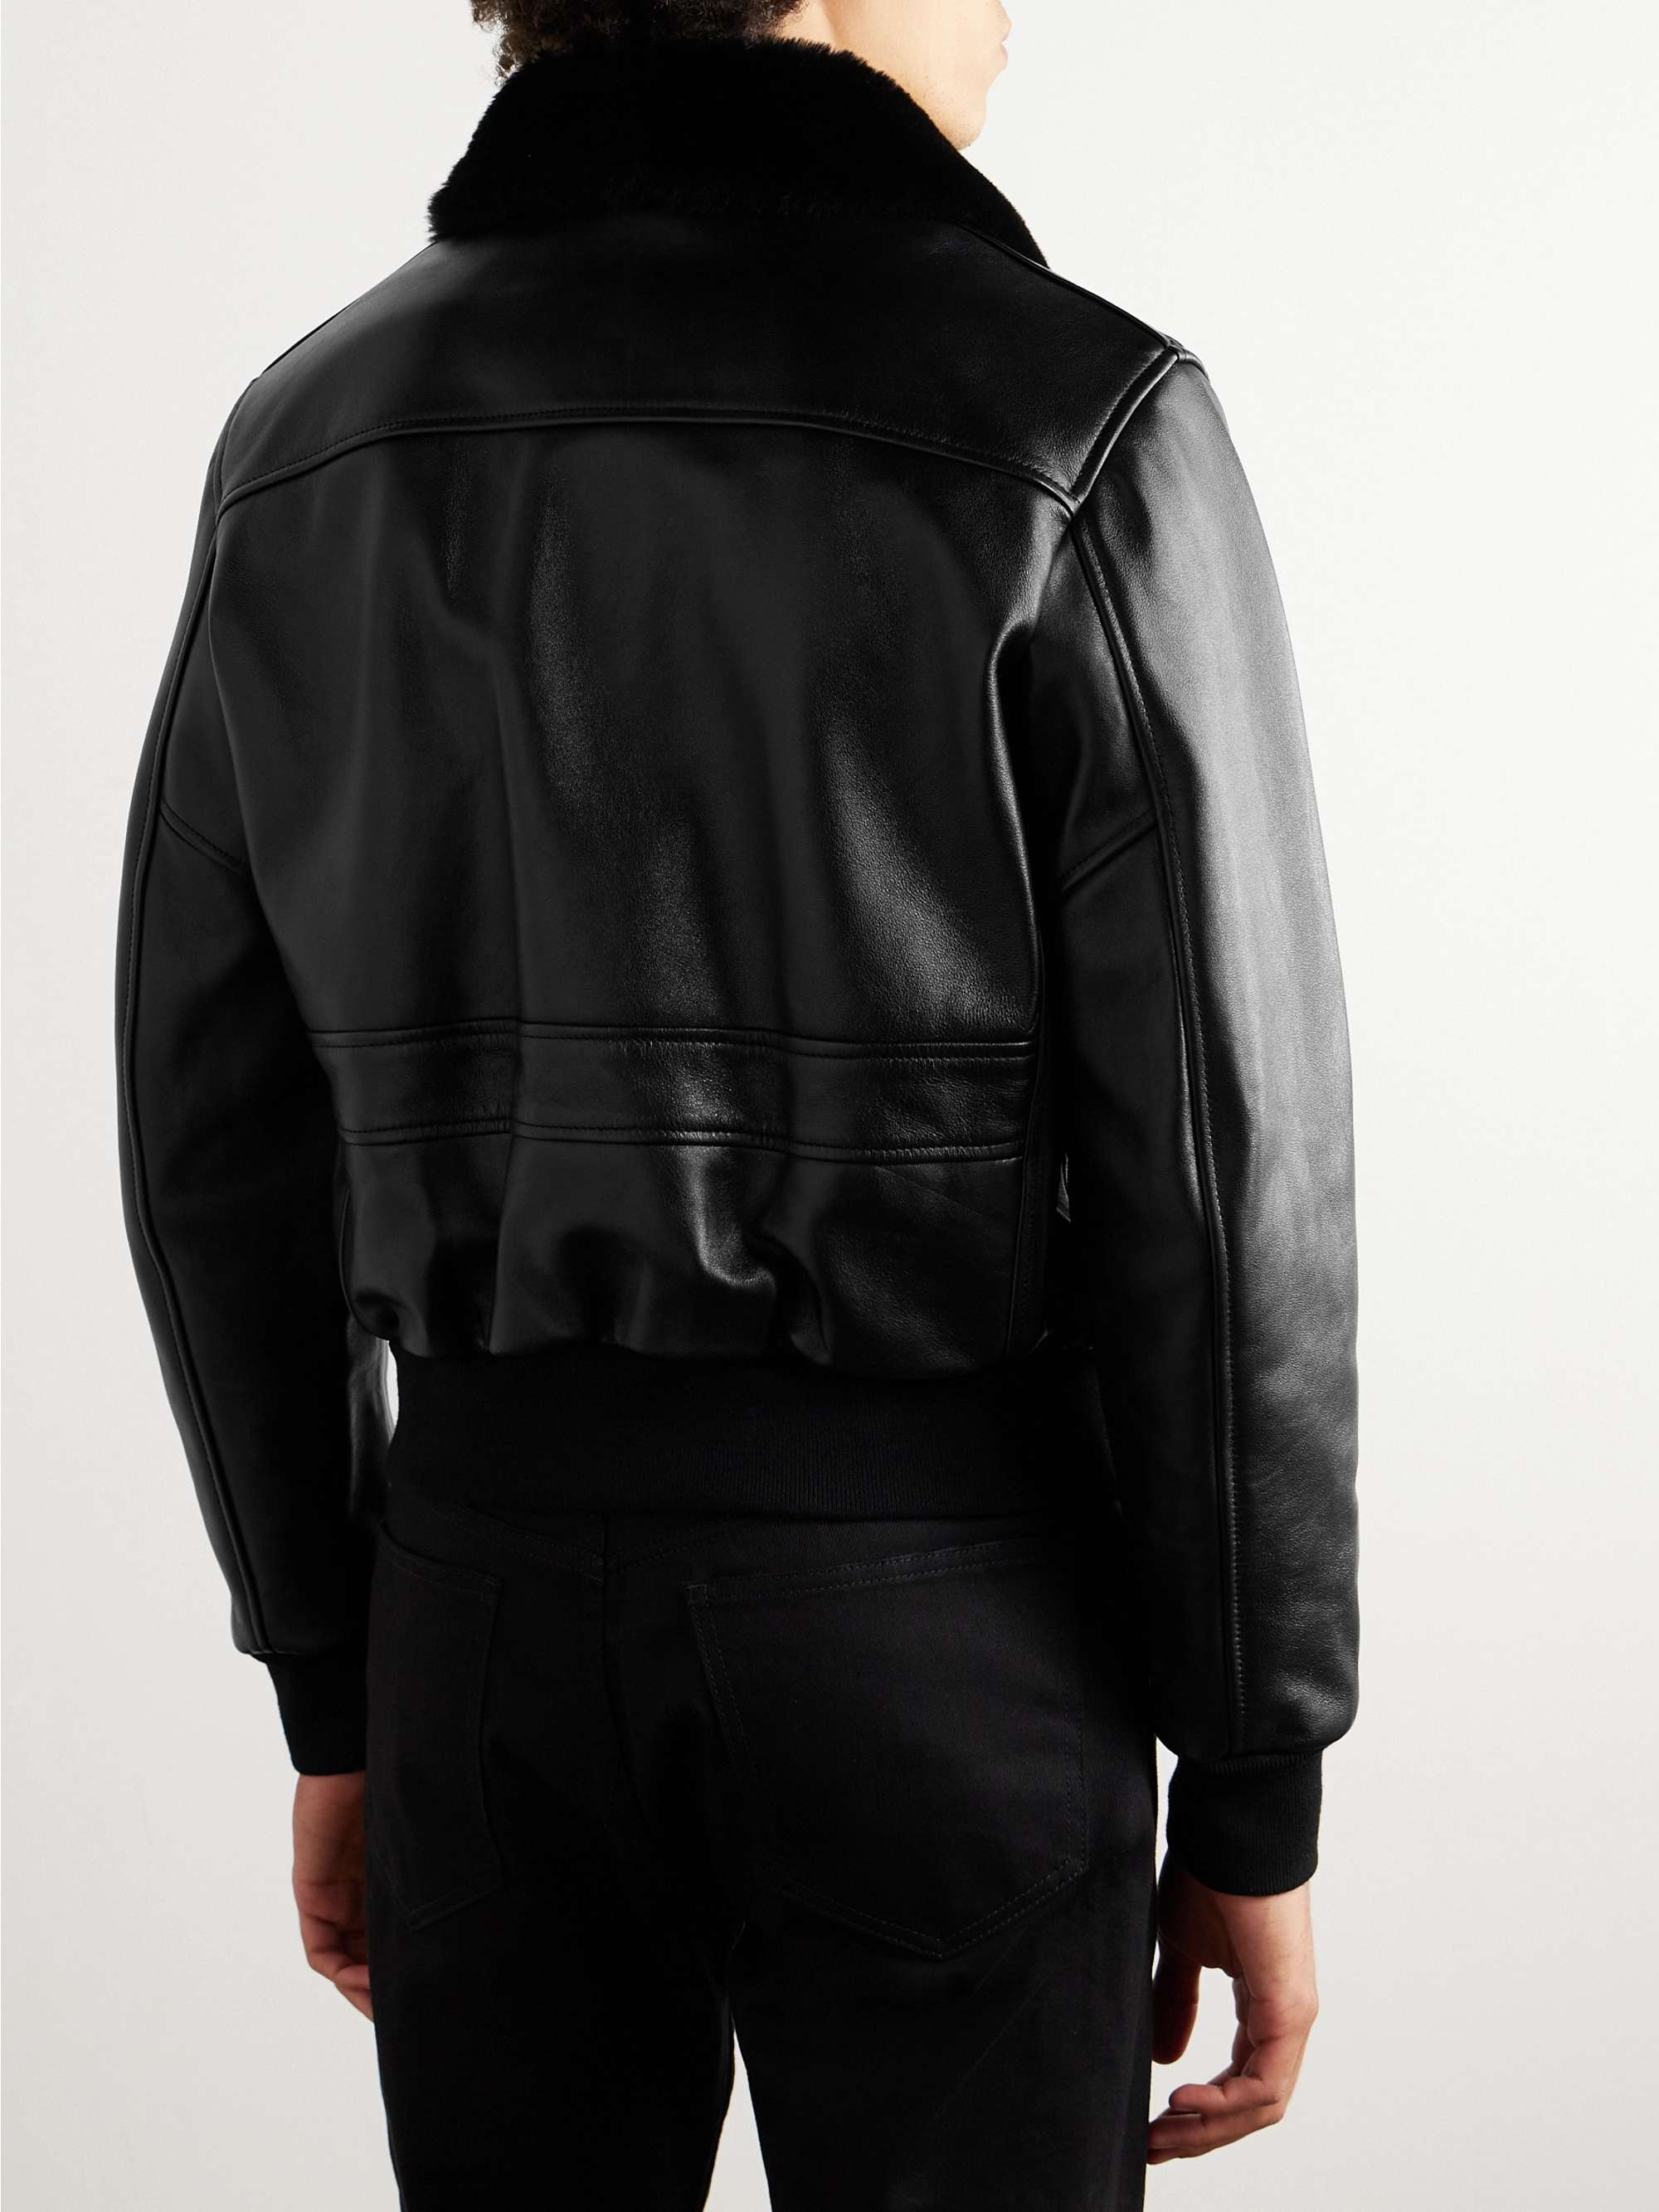 CELINE HOMME Shearling-Lined Leather Jacket for Men | MR PORTER